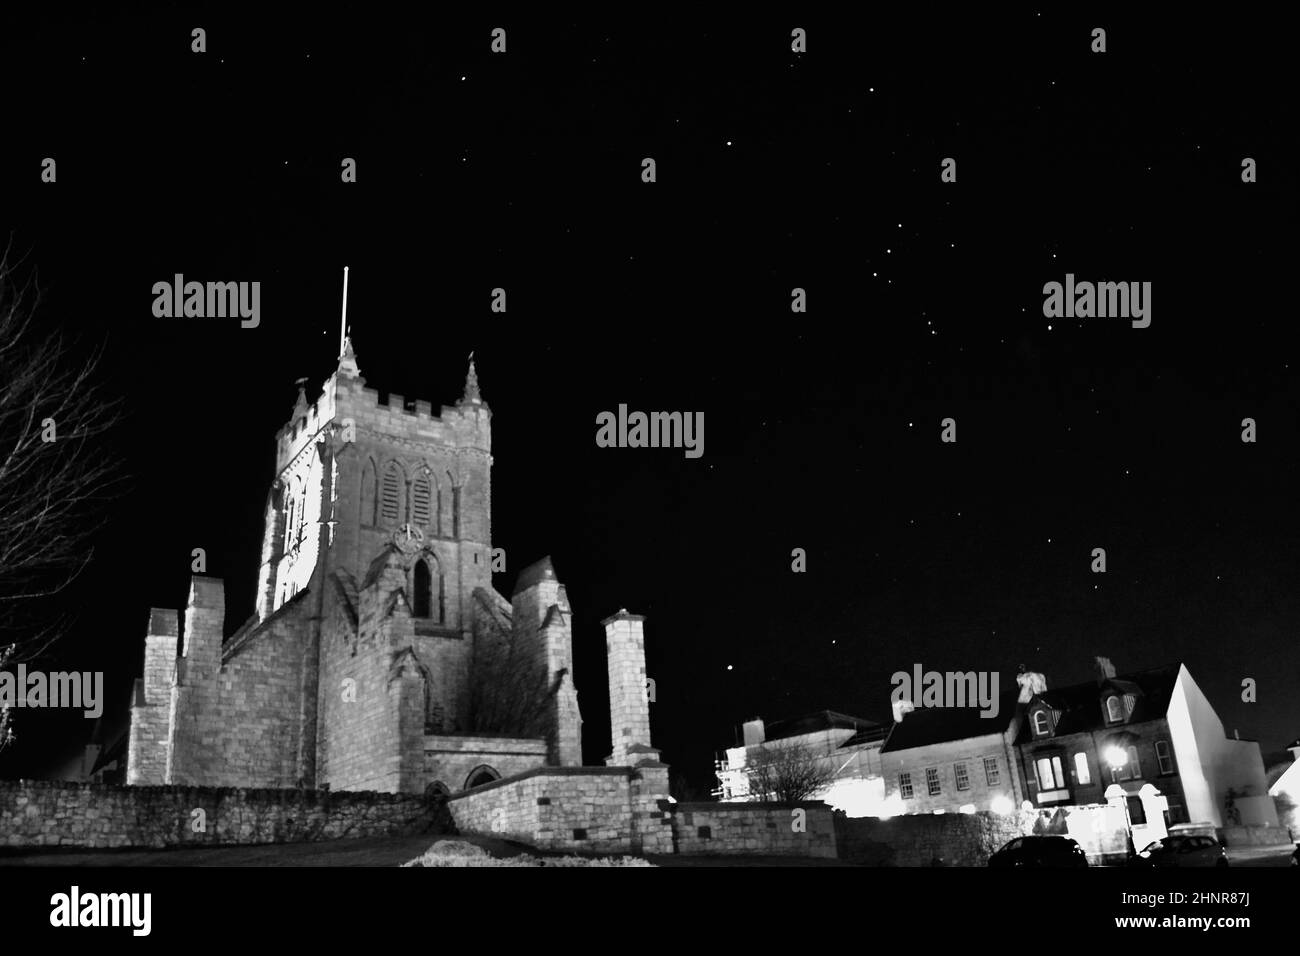 Imagen en blanco y negro de la Iglesia de San Hilda, Hartlepool, Reino Unido, con un impresionante cielo nocturno. Las estrellas brillan incluyendo la constelación de Orión. Foto de stock